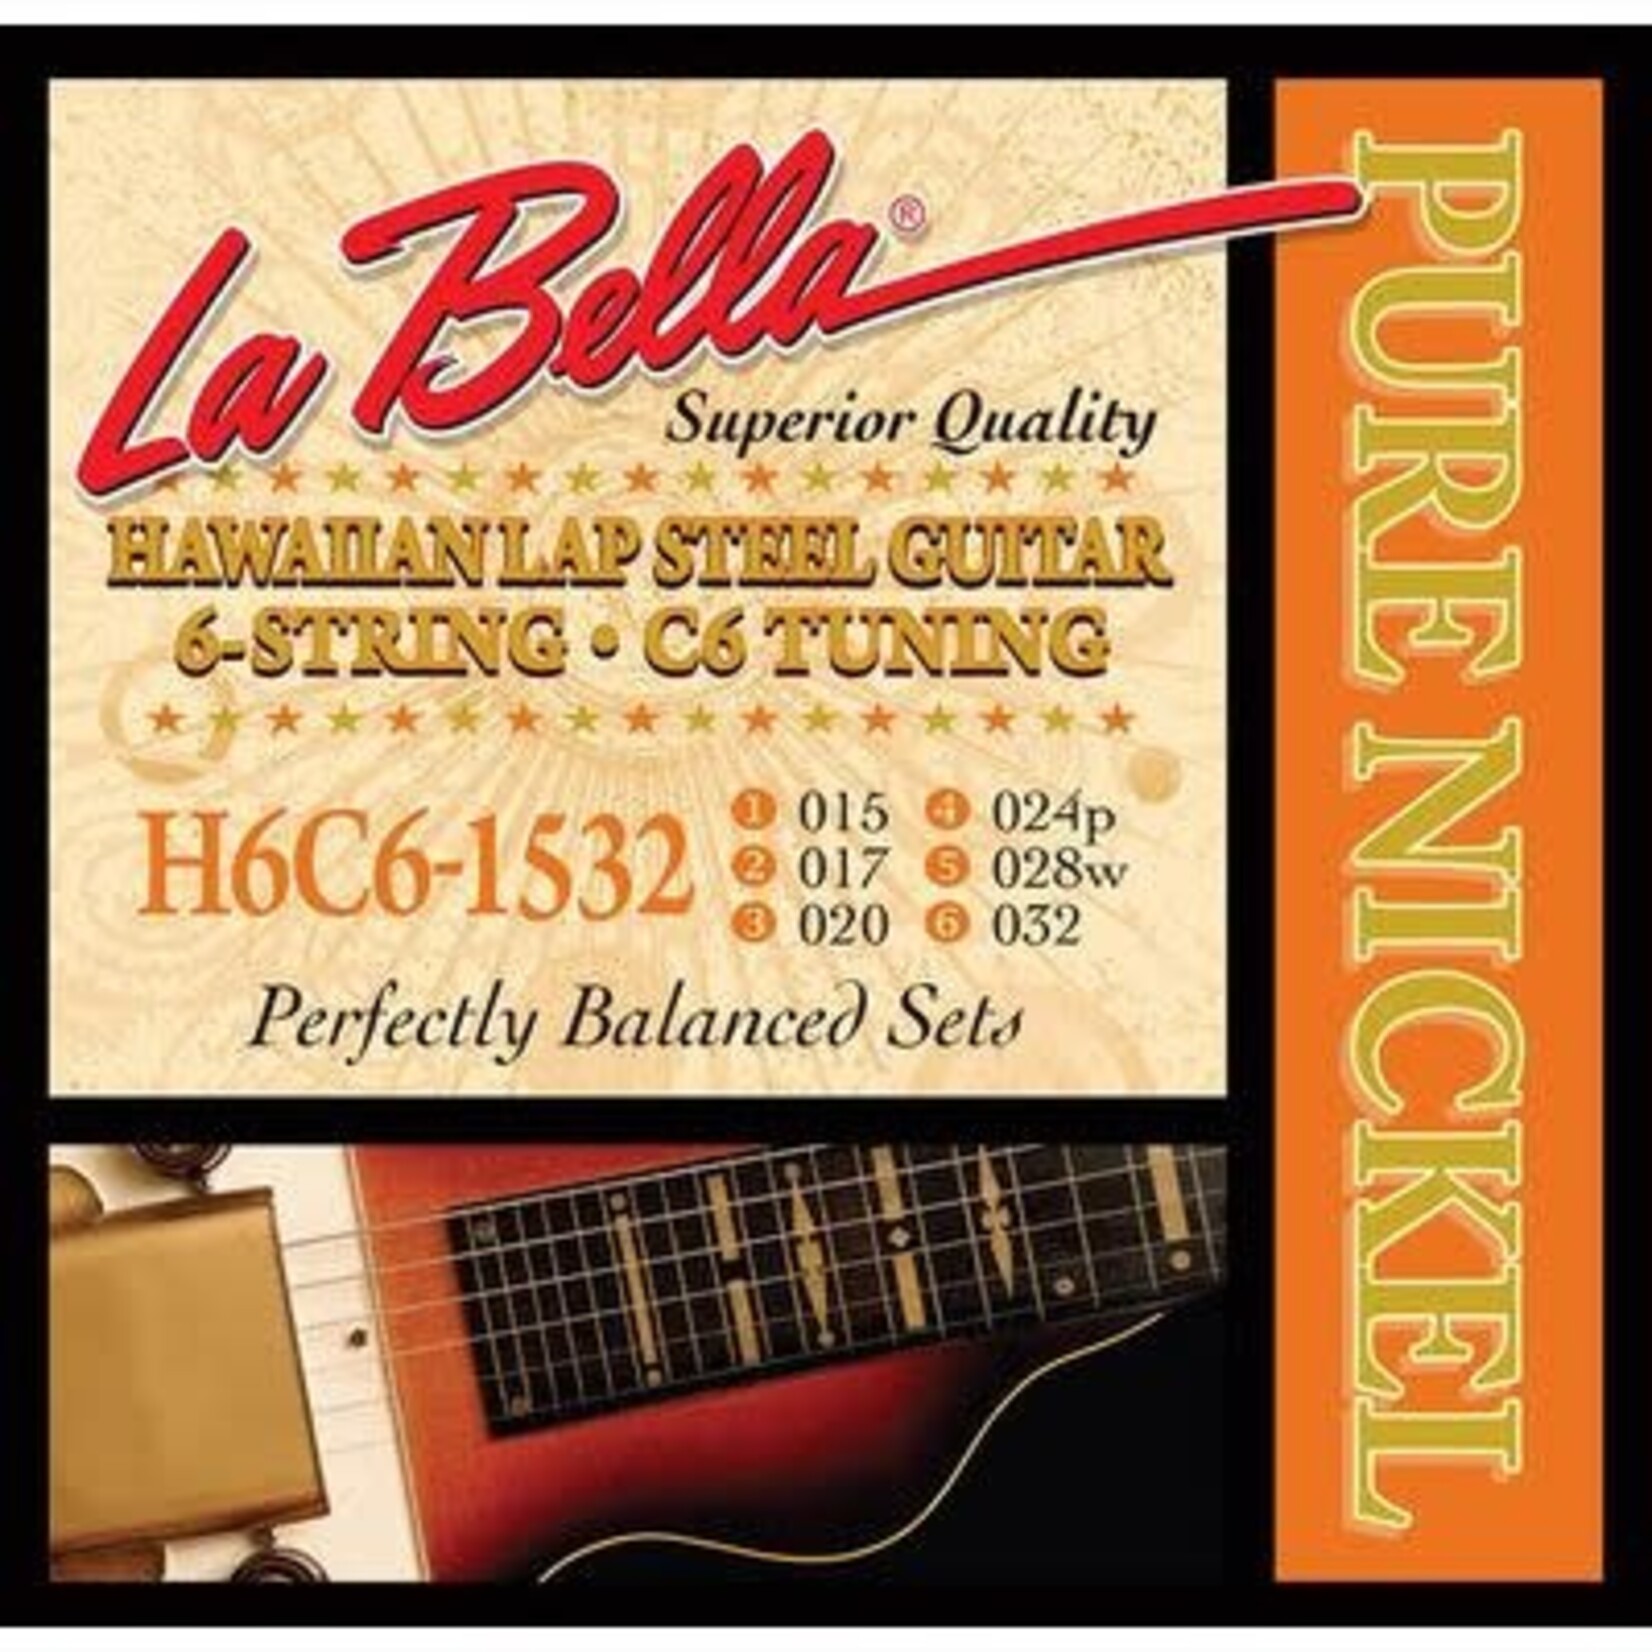 La Bella La Bella Lap Steel Guitar string set pure nickel, 6-string C6-tuning  15-32